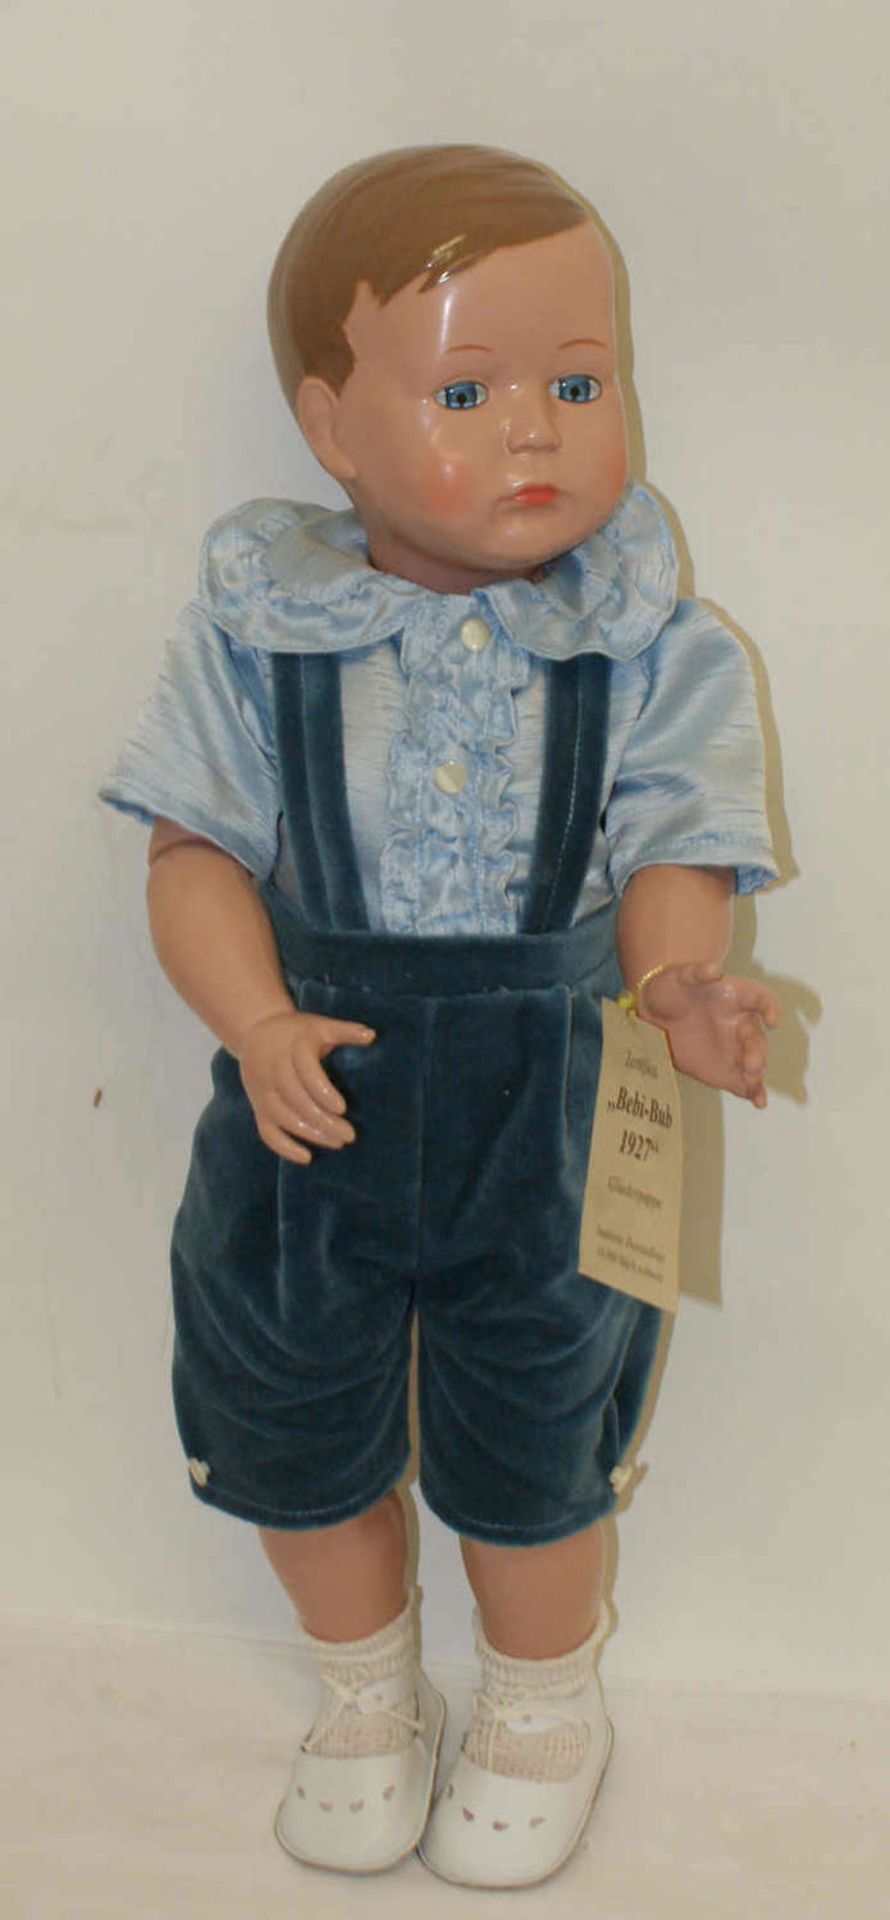 Schildkröt Puppe "Bebi-Bub 1927", Gliederpuppe, limitierte Zweitauflage 10.000 Stück weltweit.